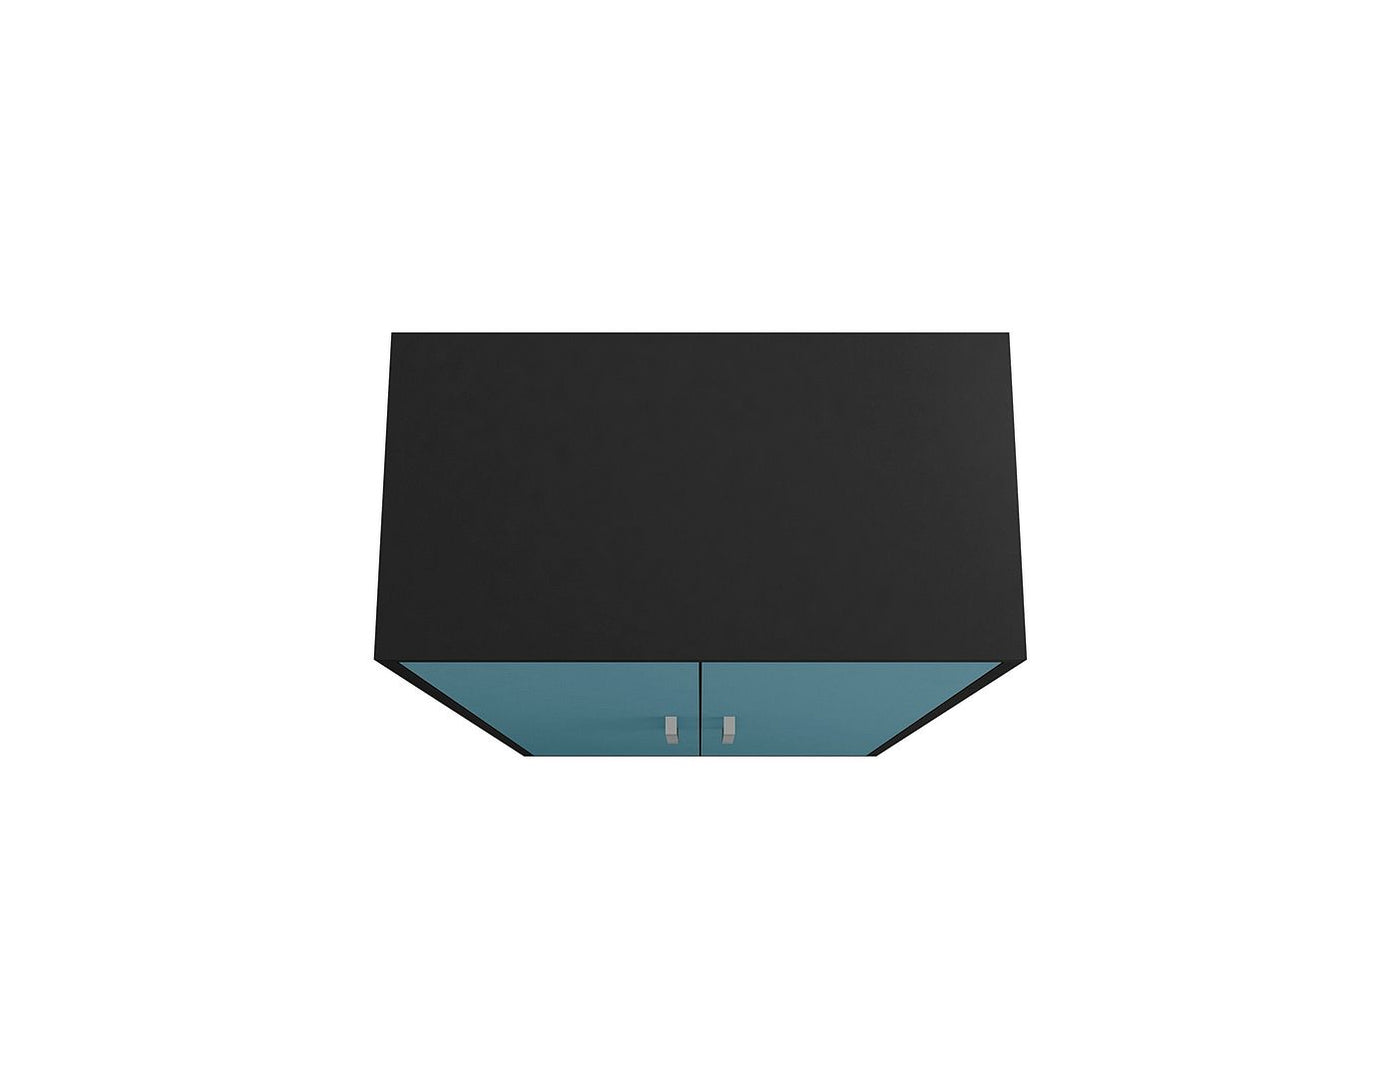 Lunde Storage Cabinet - Matte Black/Aqua Blue - Set of 2